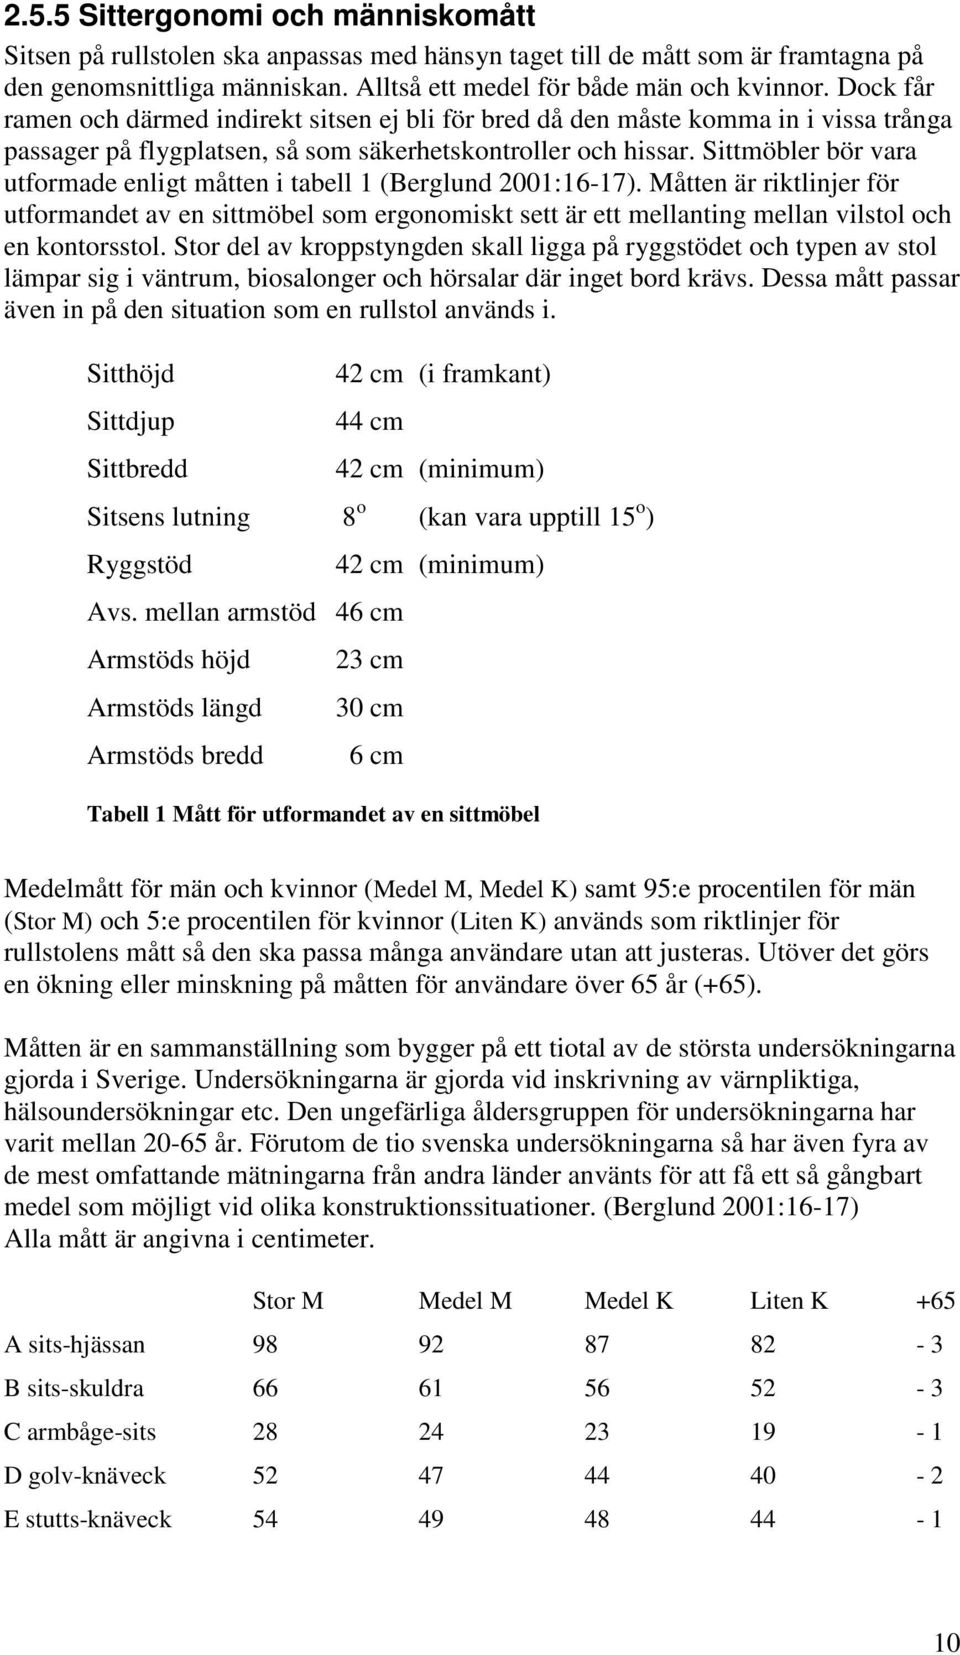 Sittmöbler bör vara utformade enligt måtten i tabell 1 (Berglund 2001:16-17).